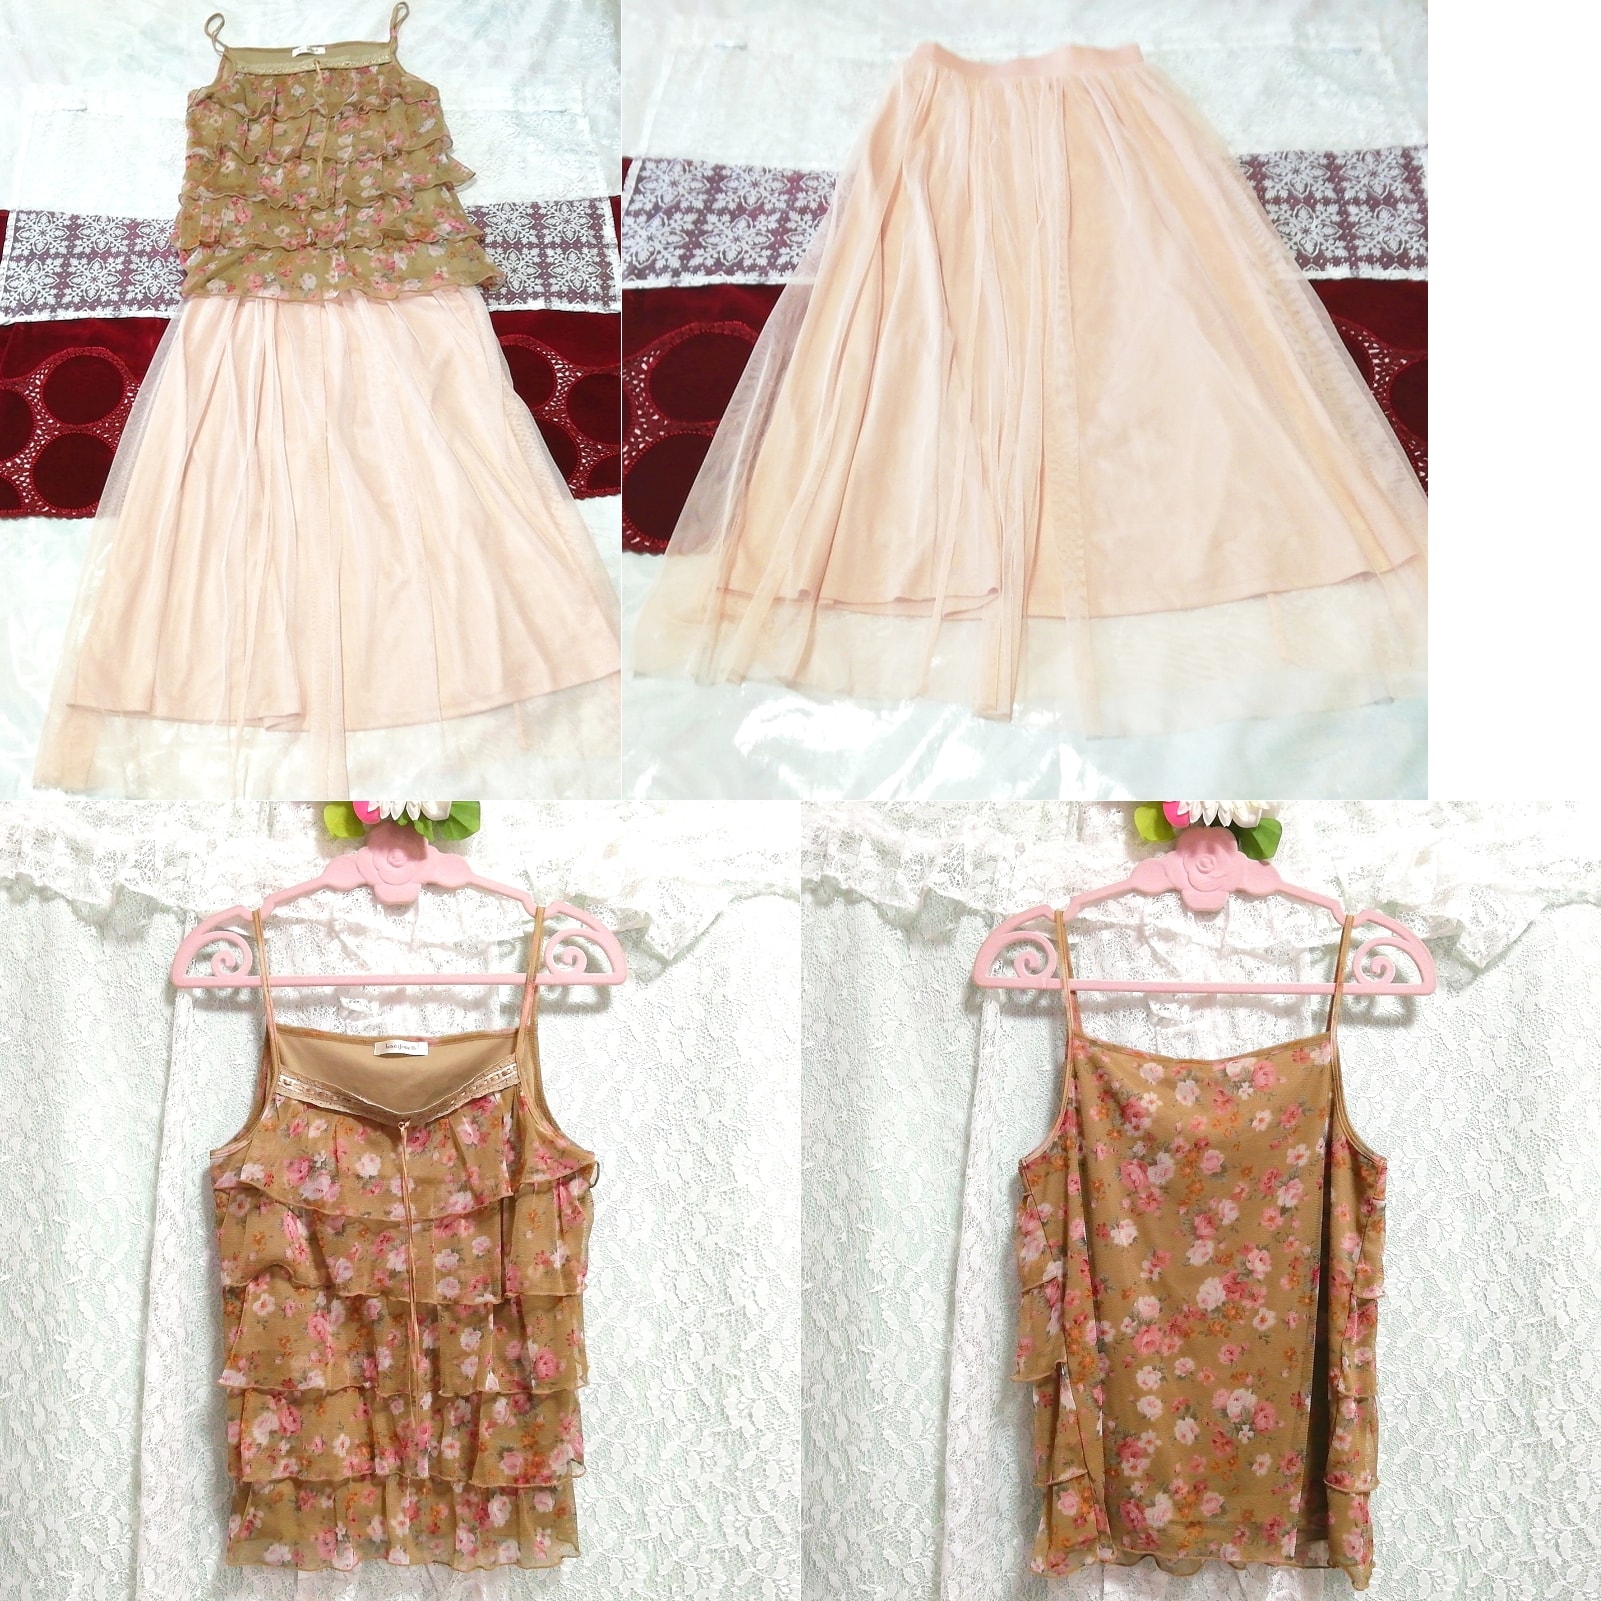 Braunes Negligé-Nachthemd mit Rüschen, rosa langer Tüllrock, 2 Stück, Mode, Frauenmode, Nachtwäsche, Pyjama